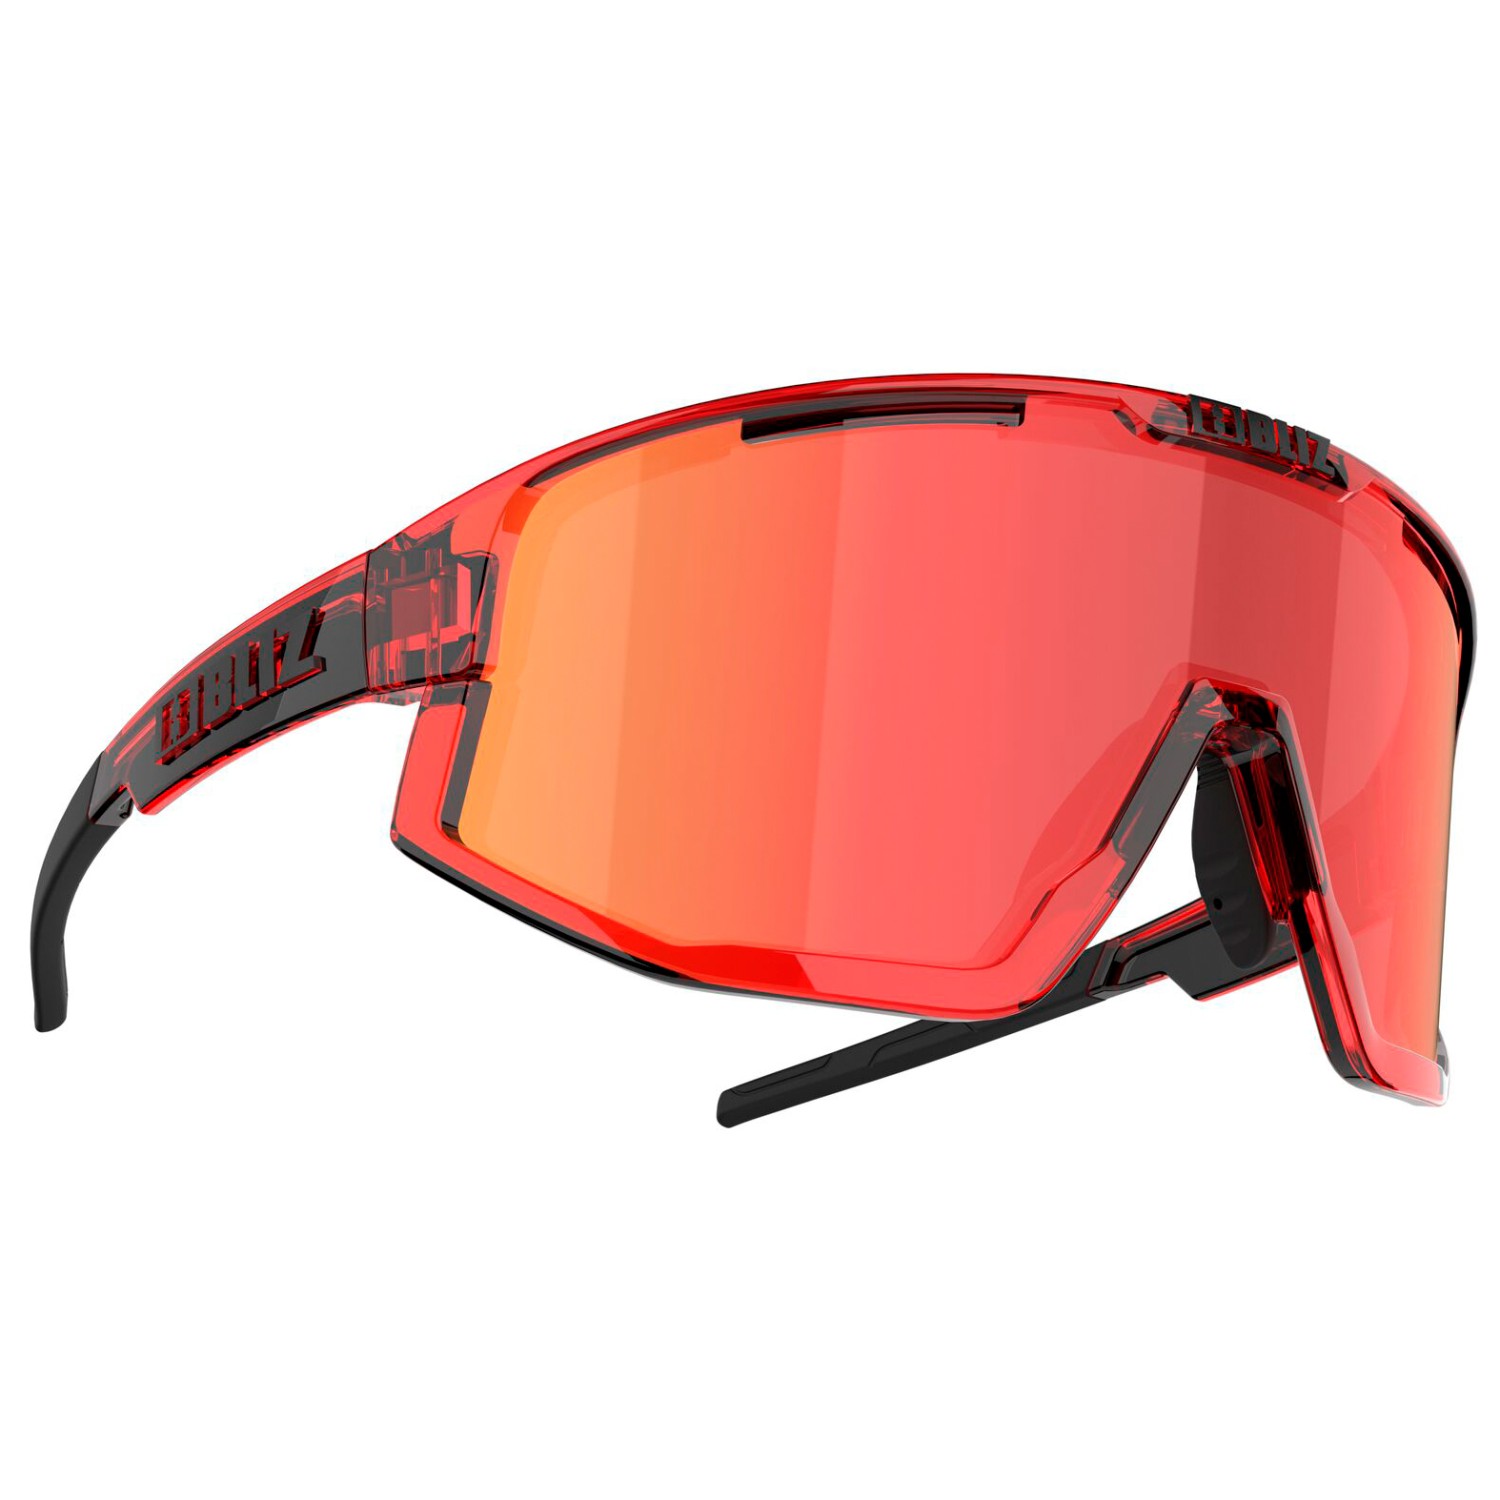 Велосипедные очки Bliz Fusion Cat: 3 VLT 14%, цвет Transparent Red/Transparent Red Jawbone